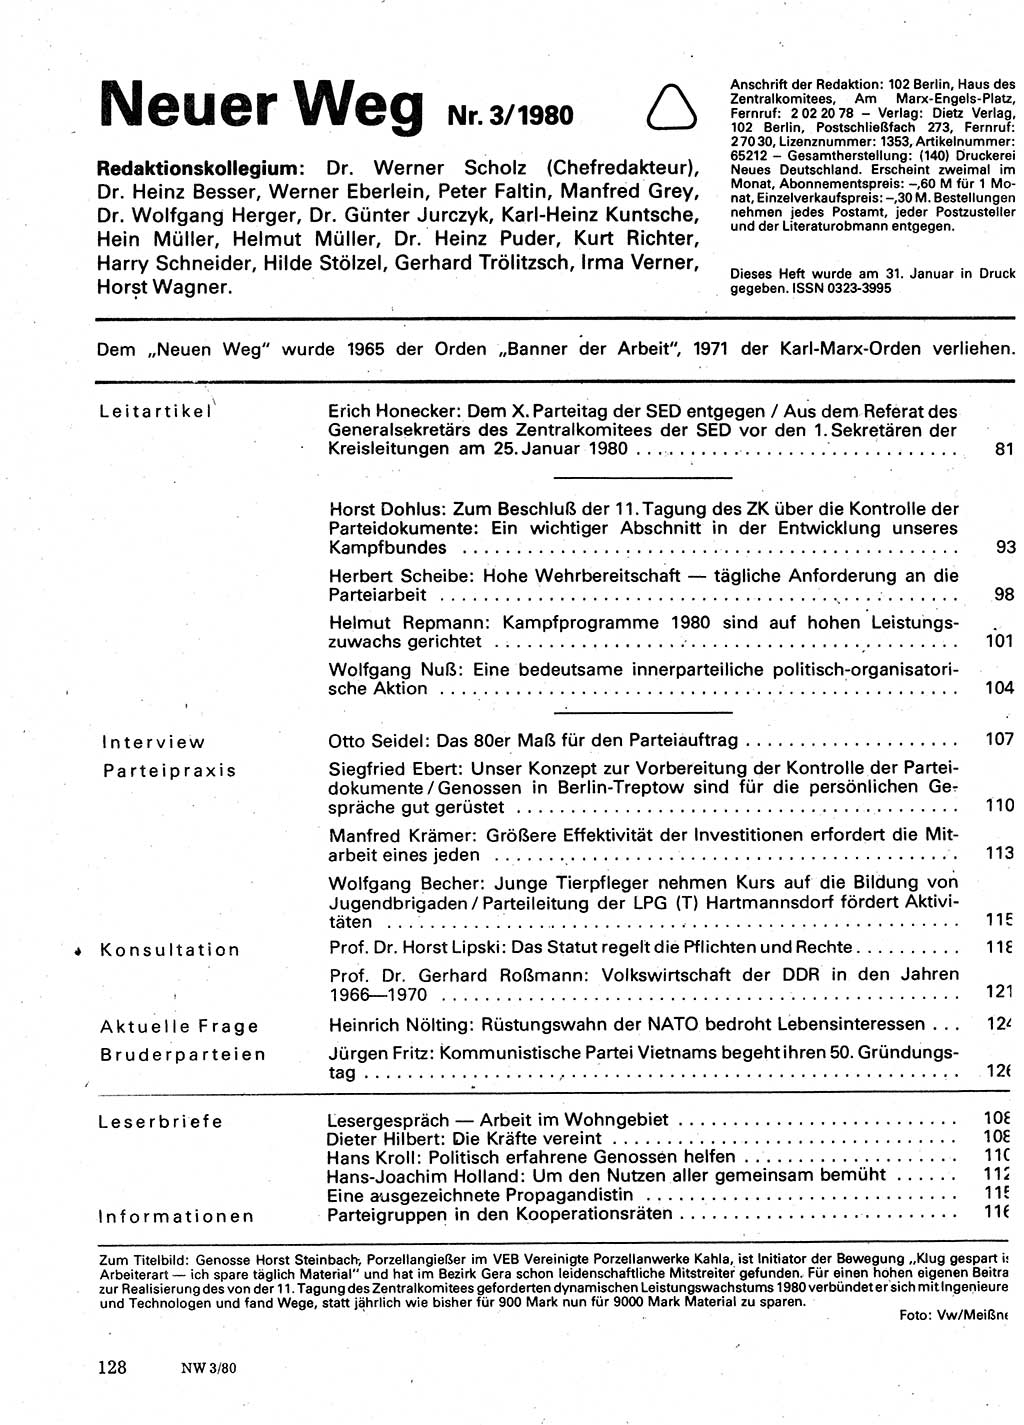 Neuer Weg (NW), Organ des Zentralkomitees (ZK) der SED (Sozialistische Einheitspartei Deutschlands) für Fragen des Parteilebens, 35. Jahrgang [Deutsche Demokratische Republik (DDR)] 1980, Seite 128 (NW ZK SED DDR 1980, S. 128)